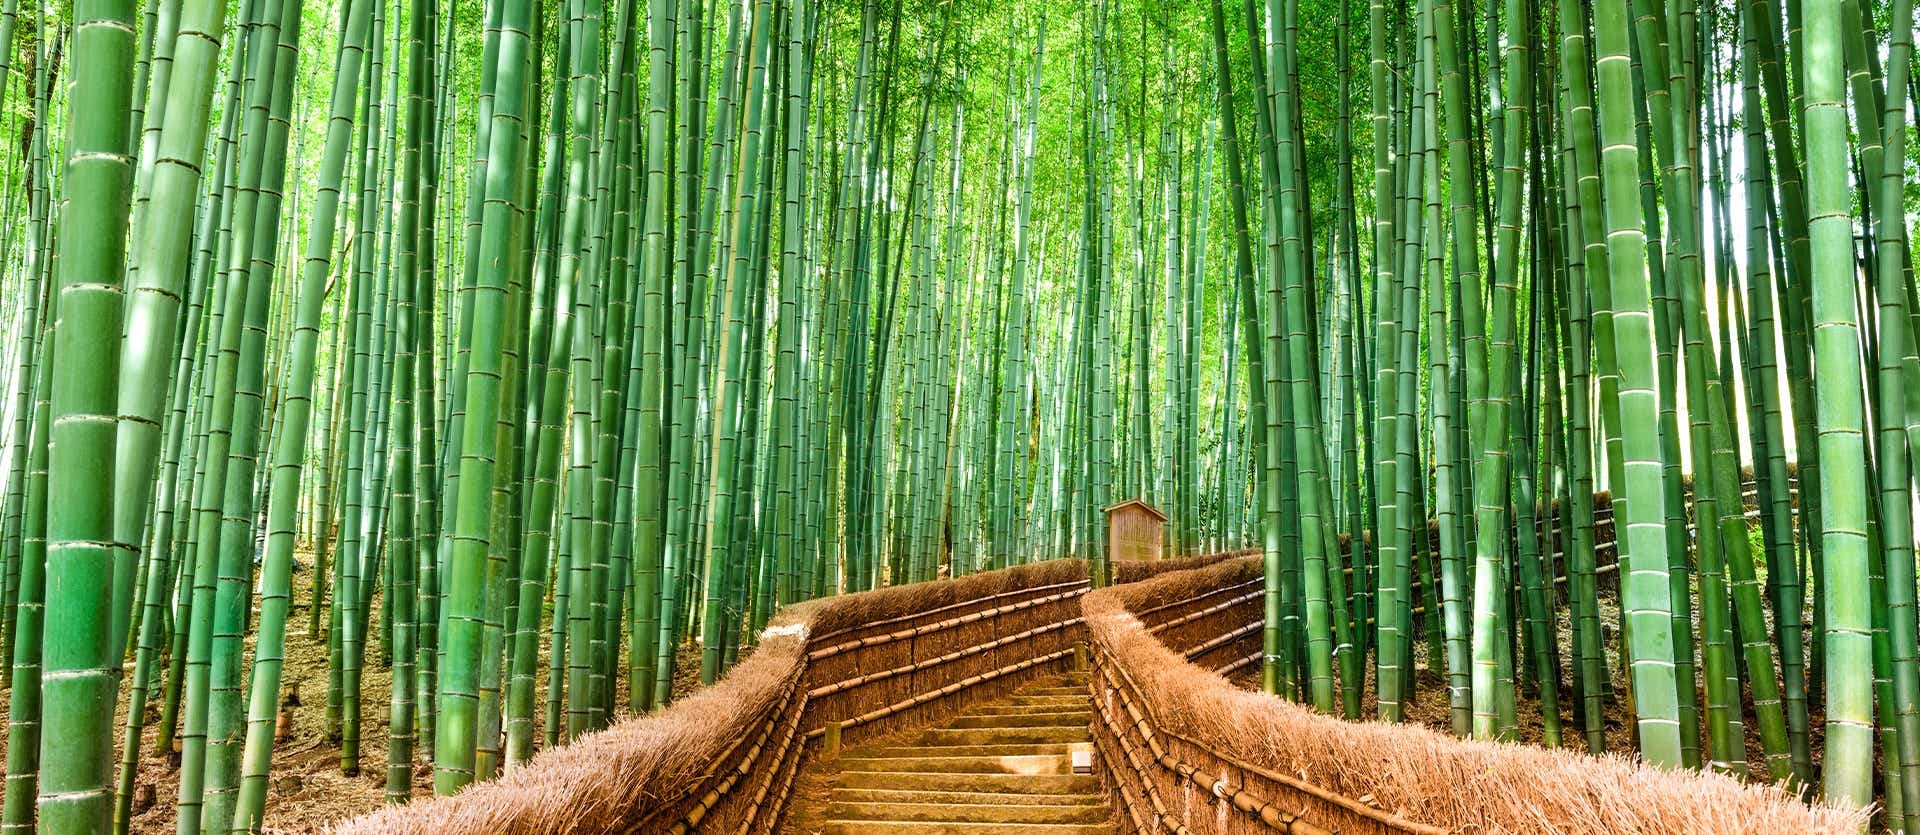 Forêt de bambous <span class="iconos separador"></span> Kioto